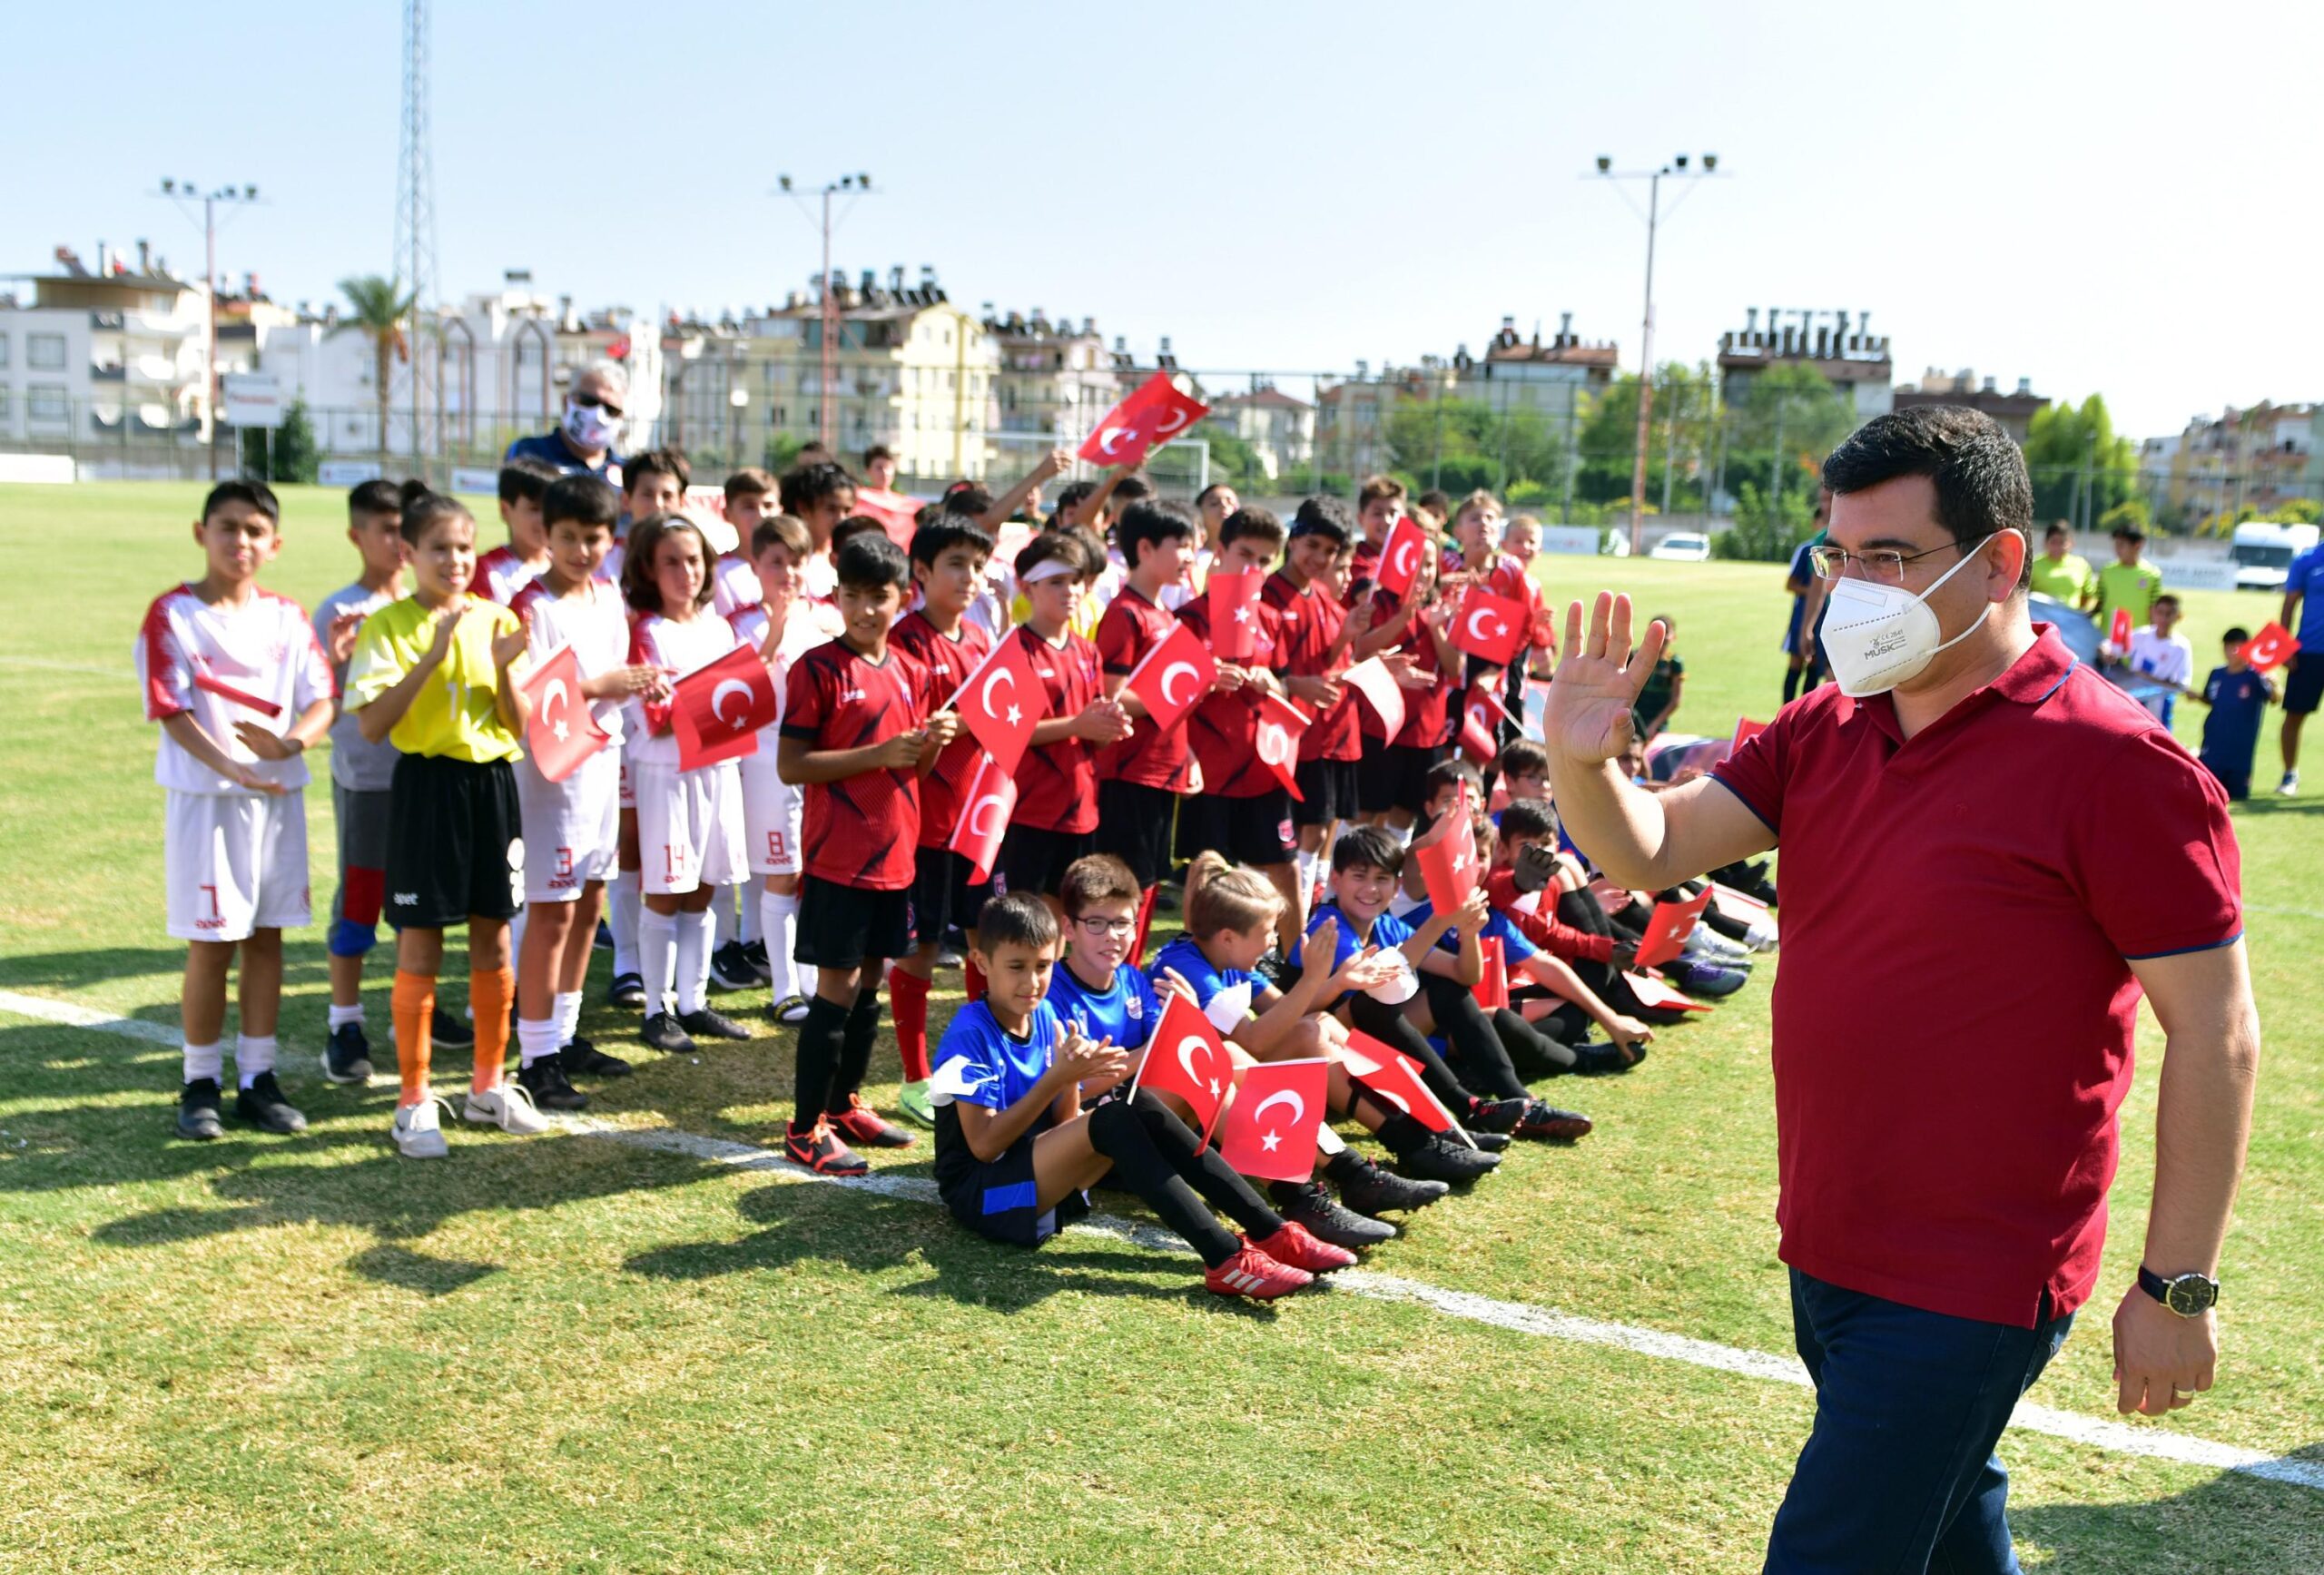 Kepez’de futbollu 29 Ekim kutlaması